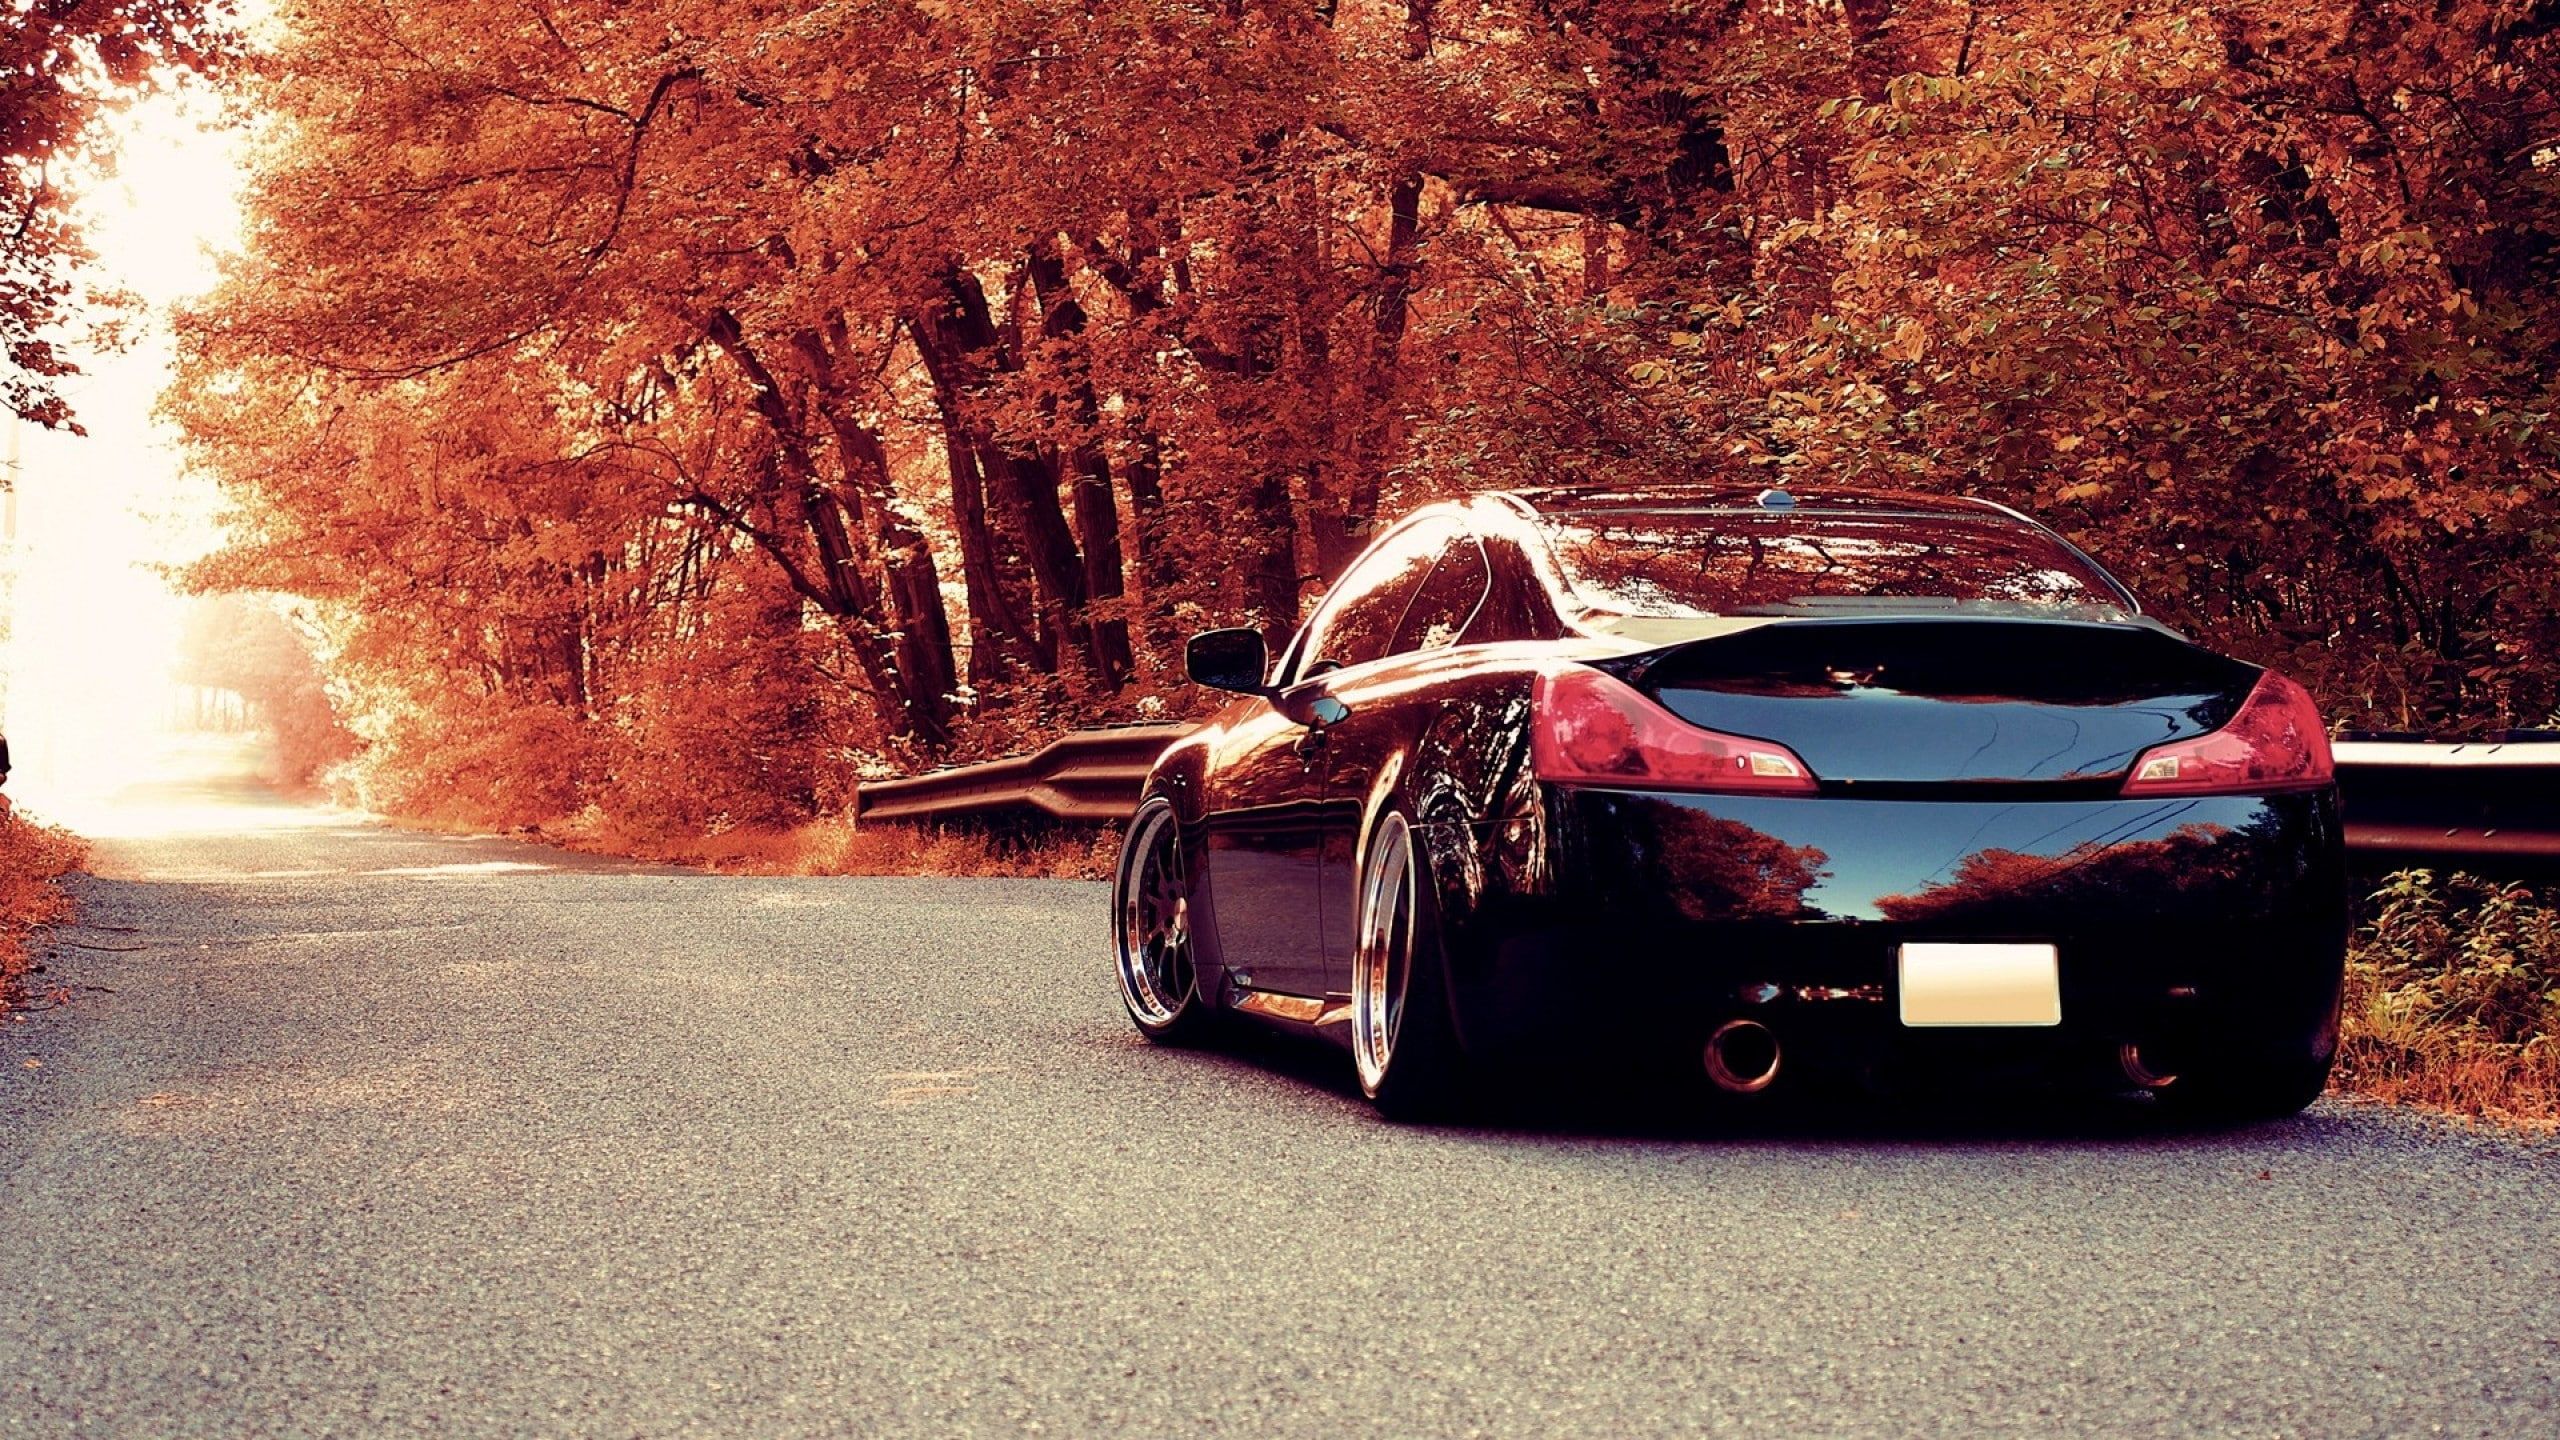 cars #road x1440 #porsche #Forest #autumn #uhd K K #wallpaper #hdwallpaper #desktop. Car picture, Porsche sports car, Car